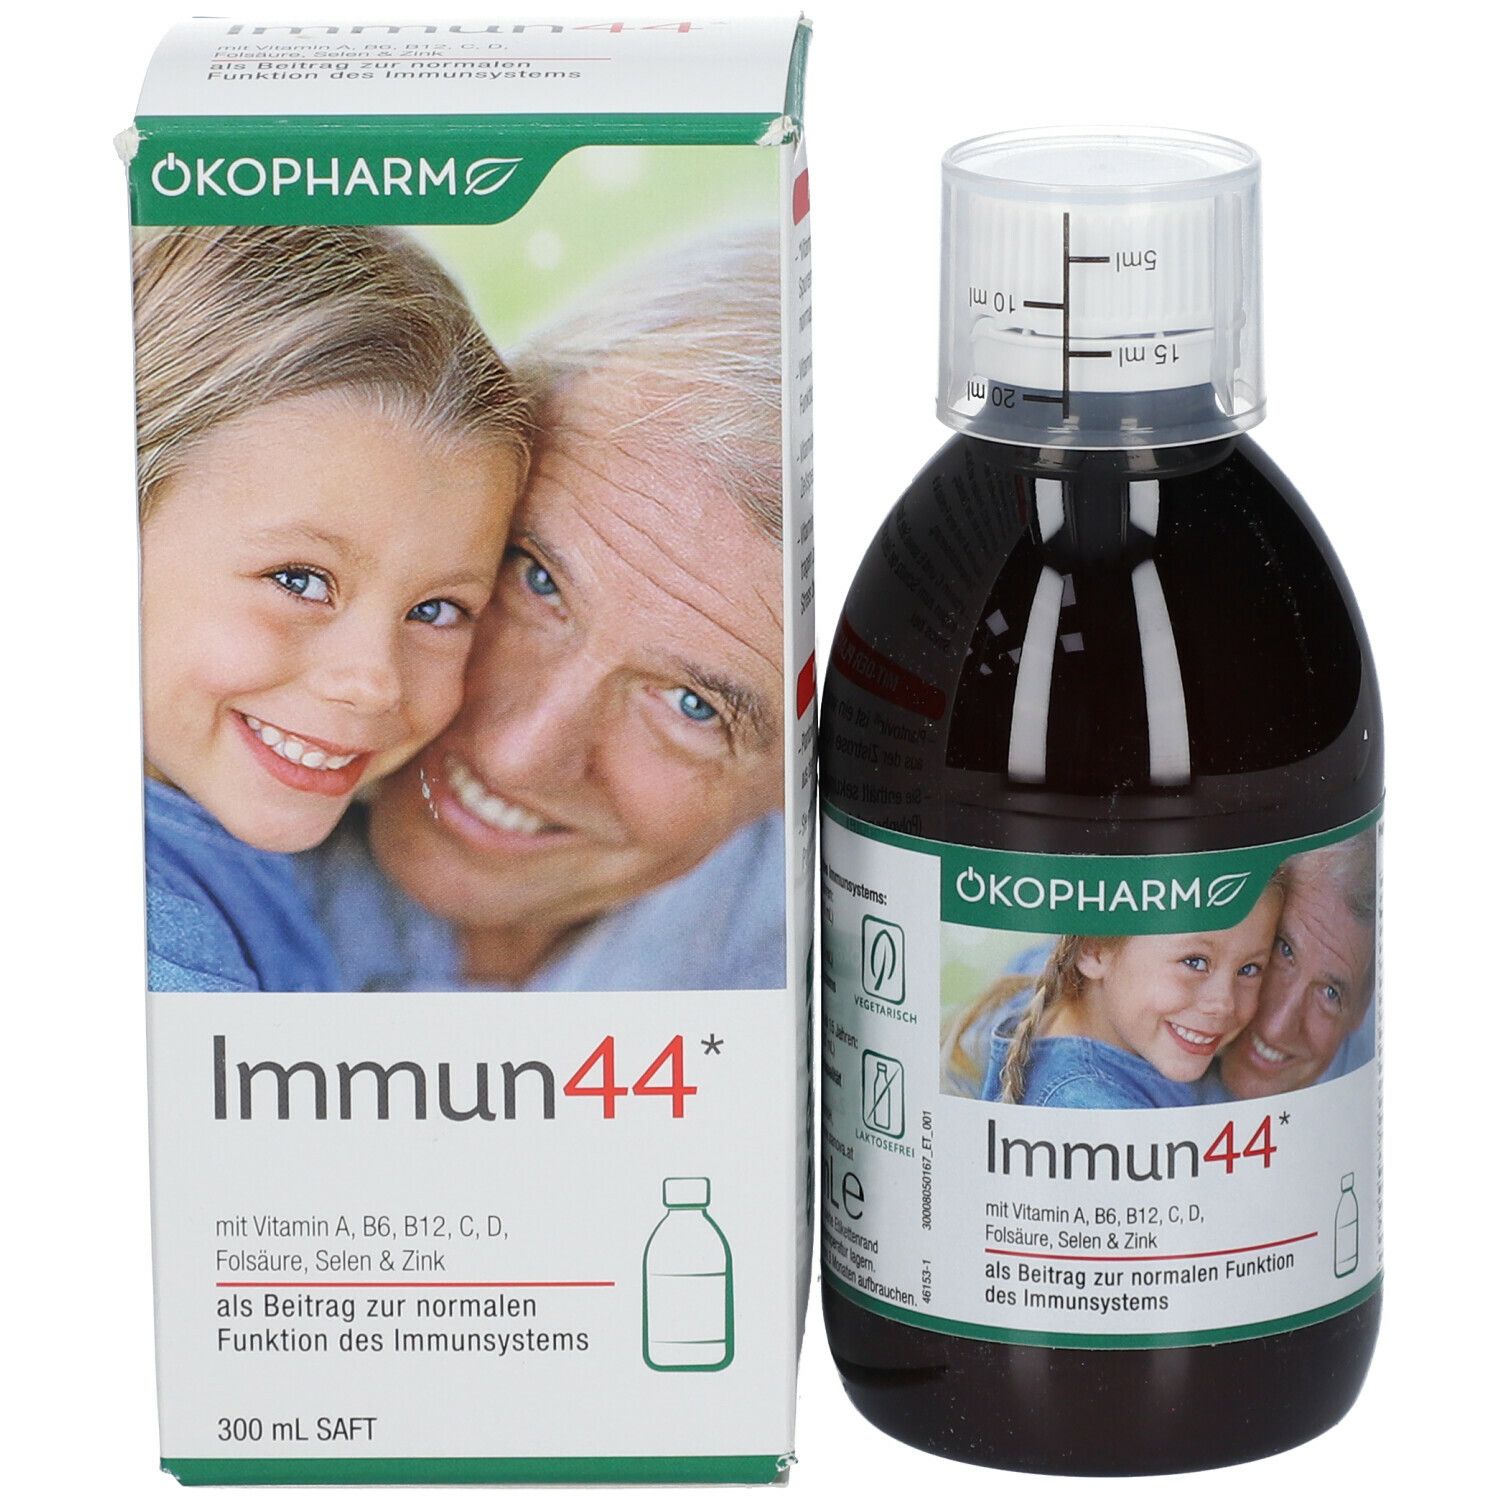 ÖKOPHARM44® Immun44®